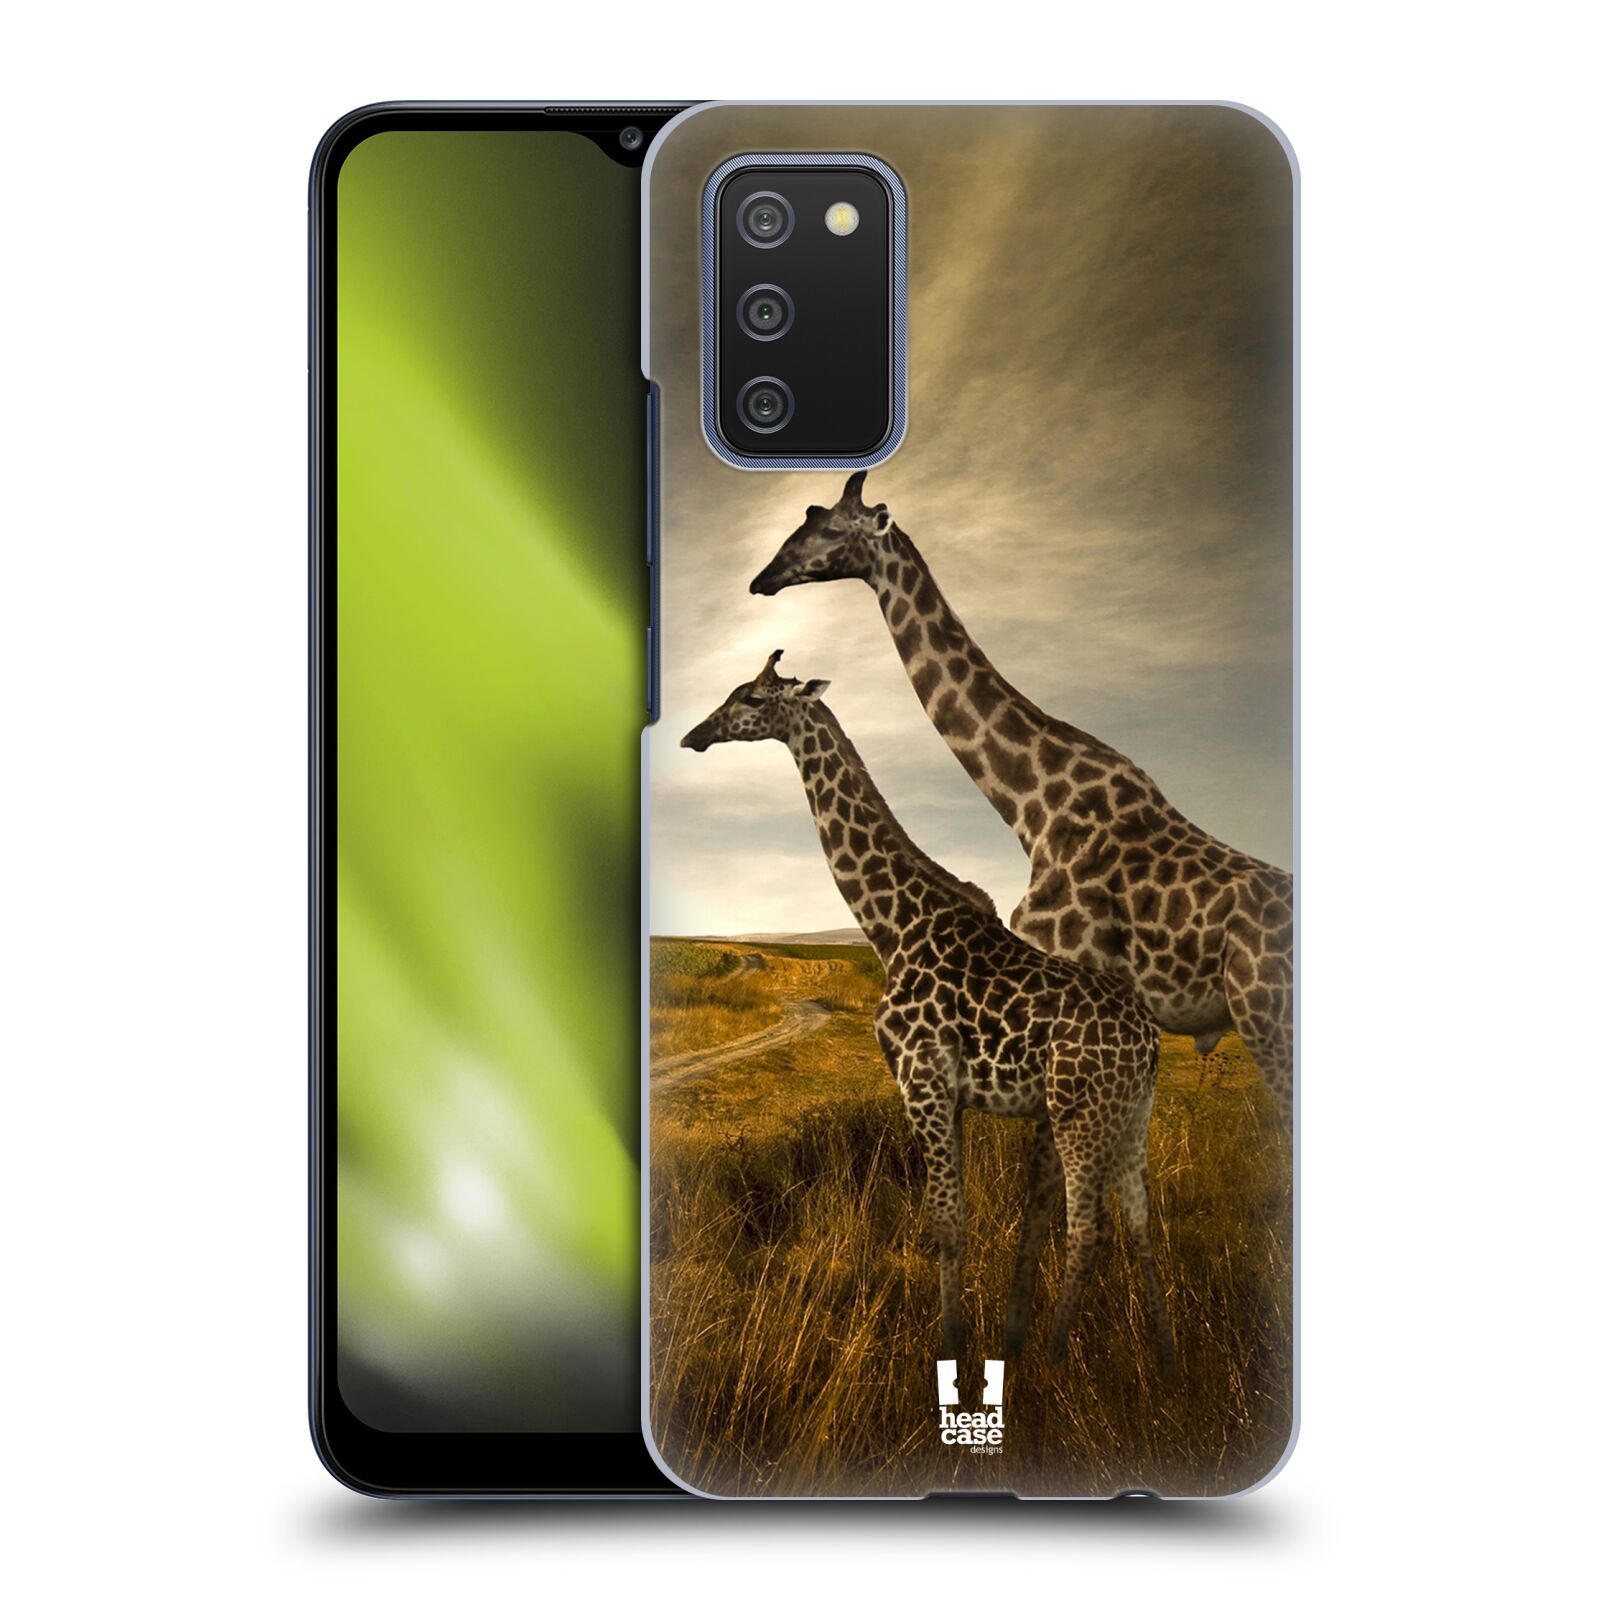 Zadní obal pro mobil Samsung Galaxy A02s - HEAD CASE - Svět zvířat žirafy